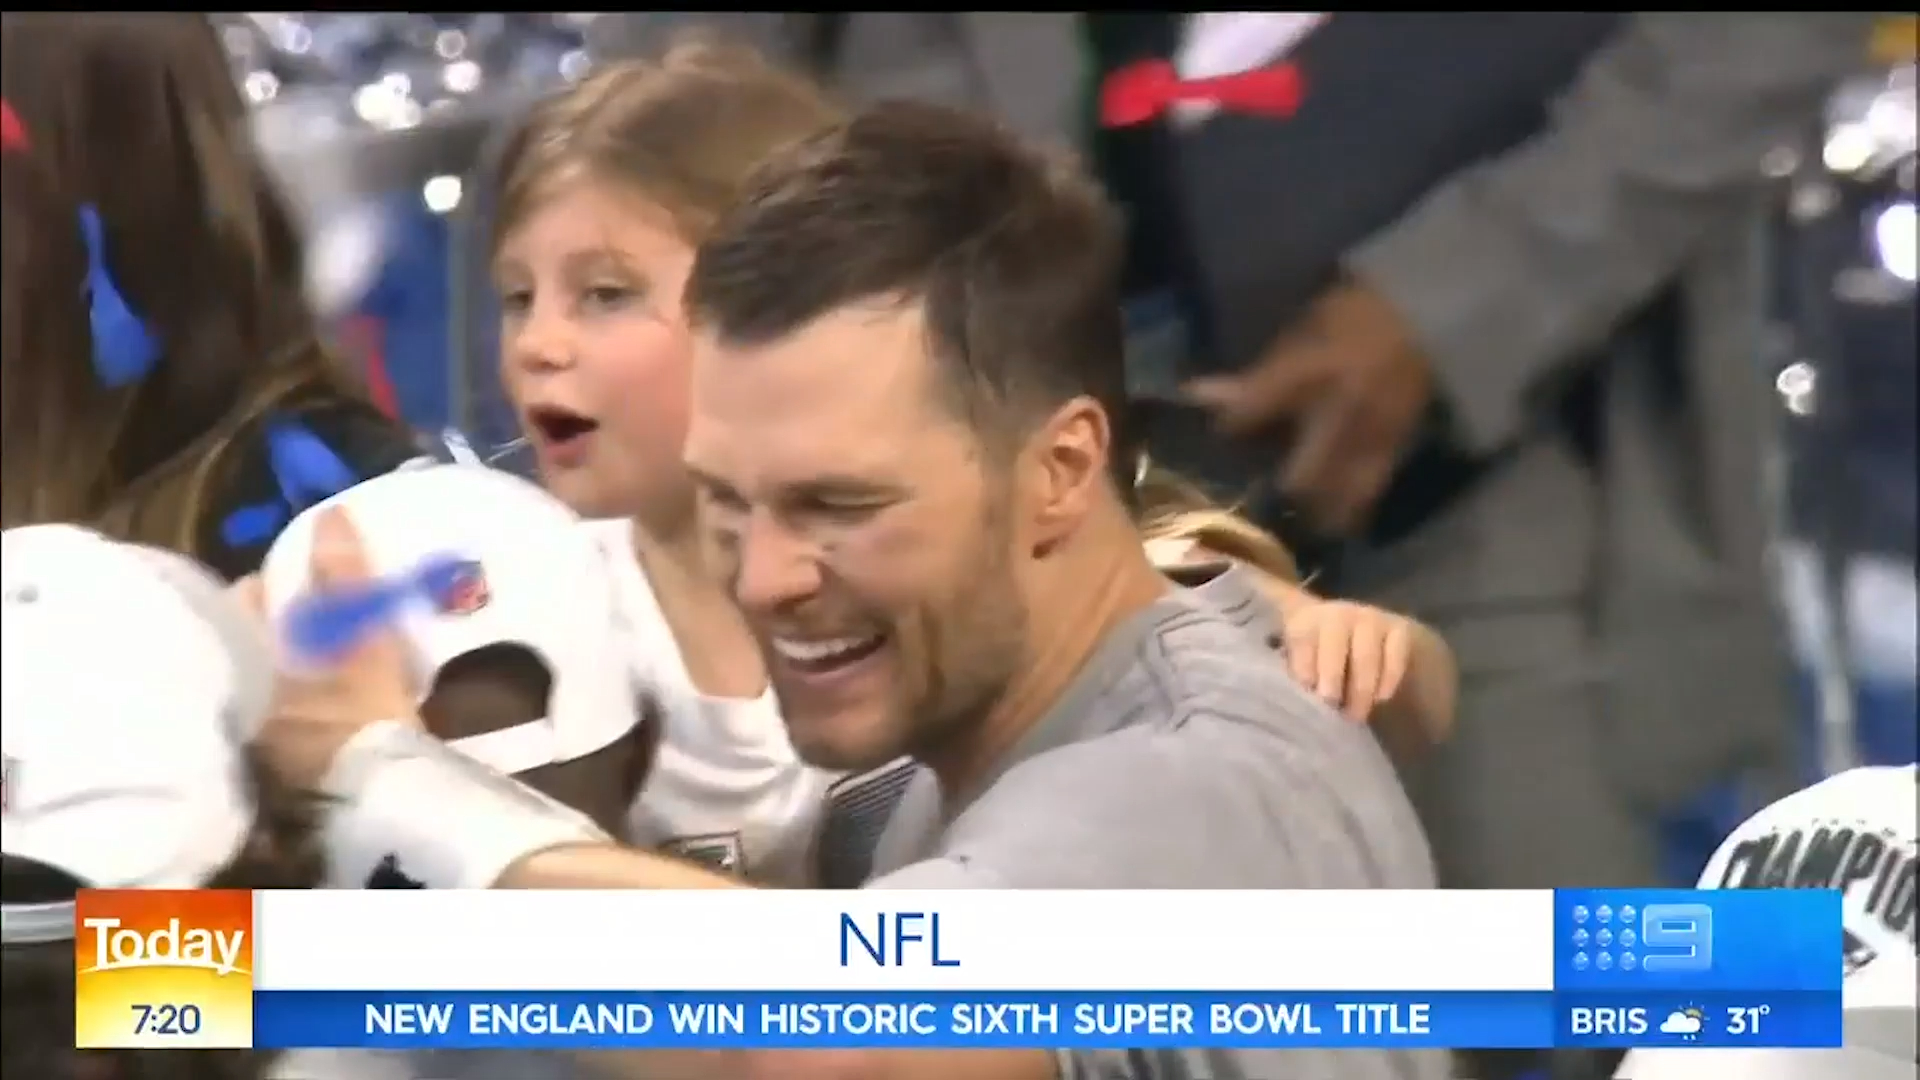 Patriots celebrate historic Super Bowl win